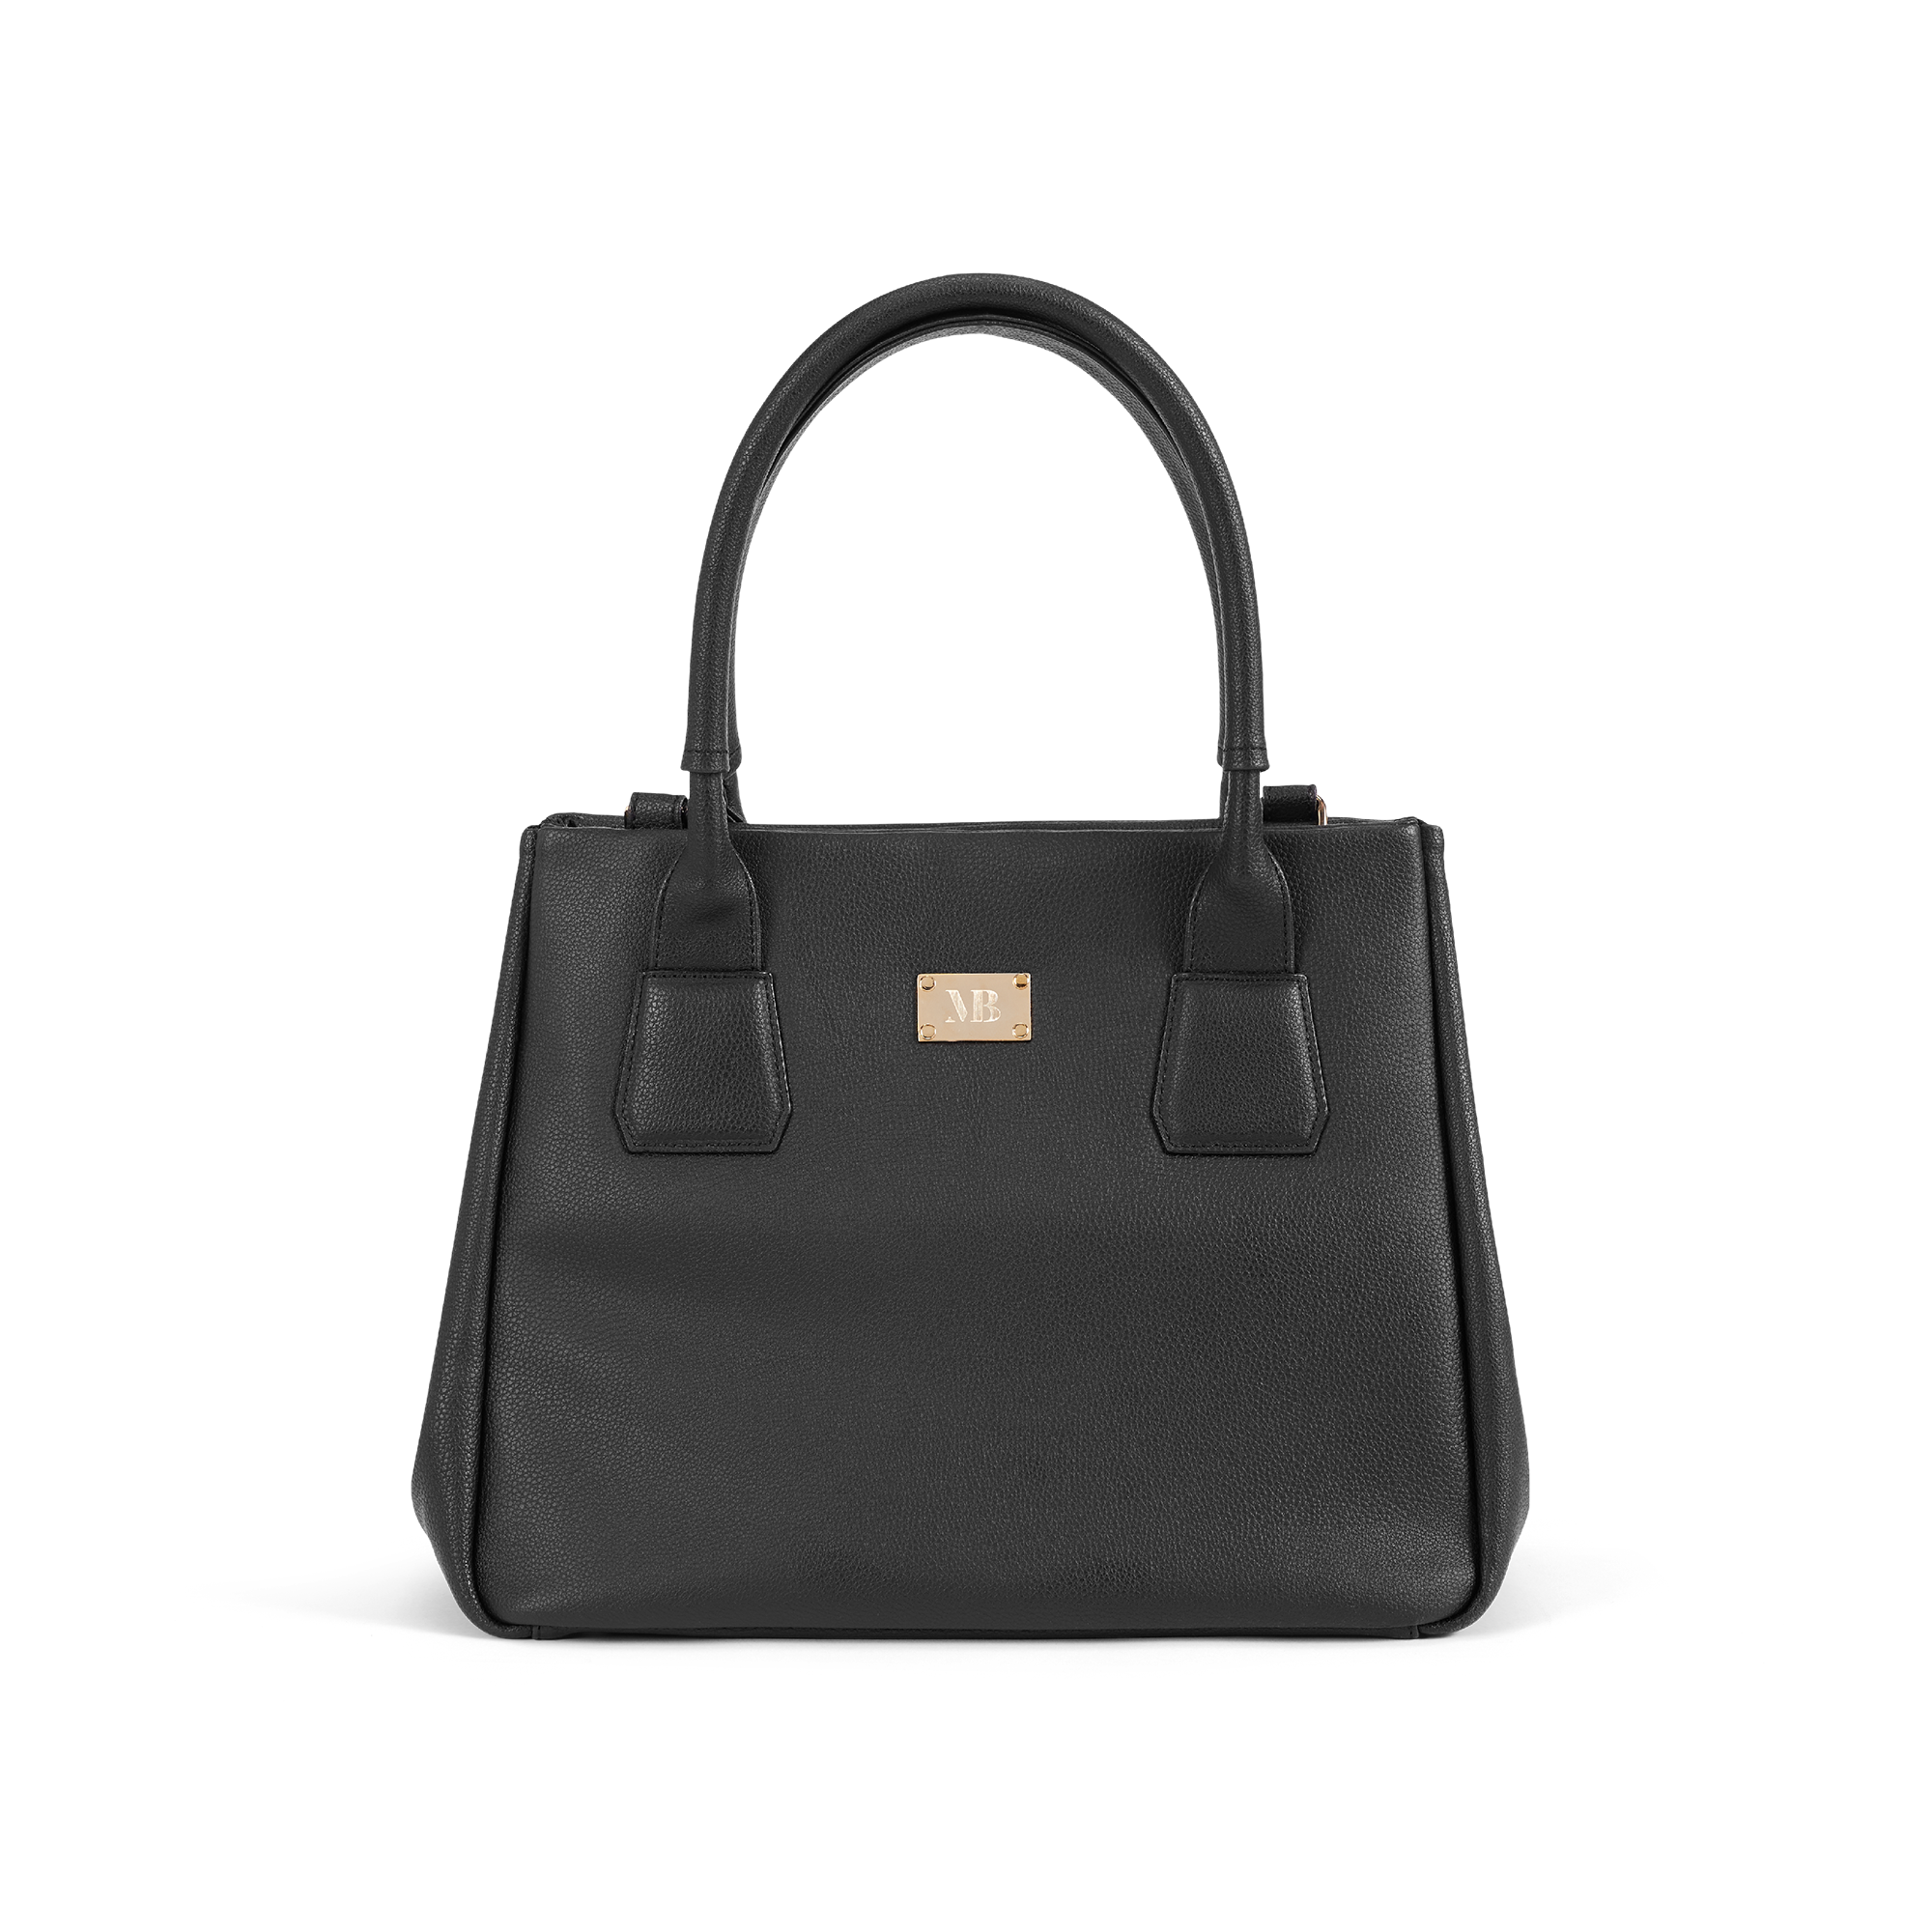 Handbag Leather Fashion Chanel Handbags Free Png Hq, Transparent